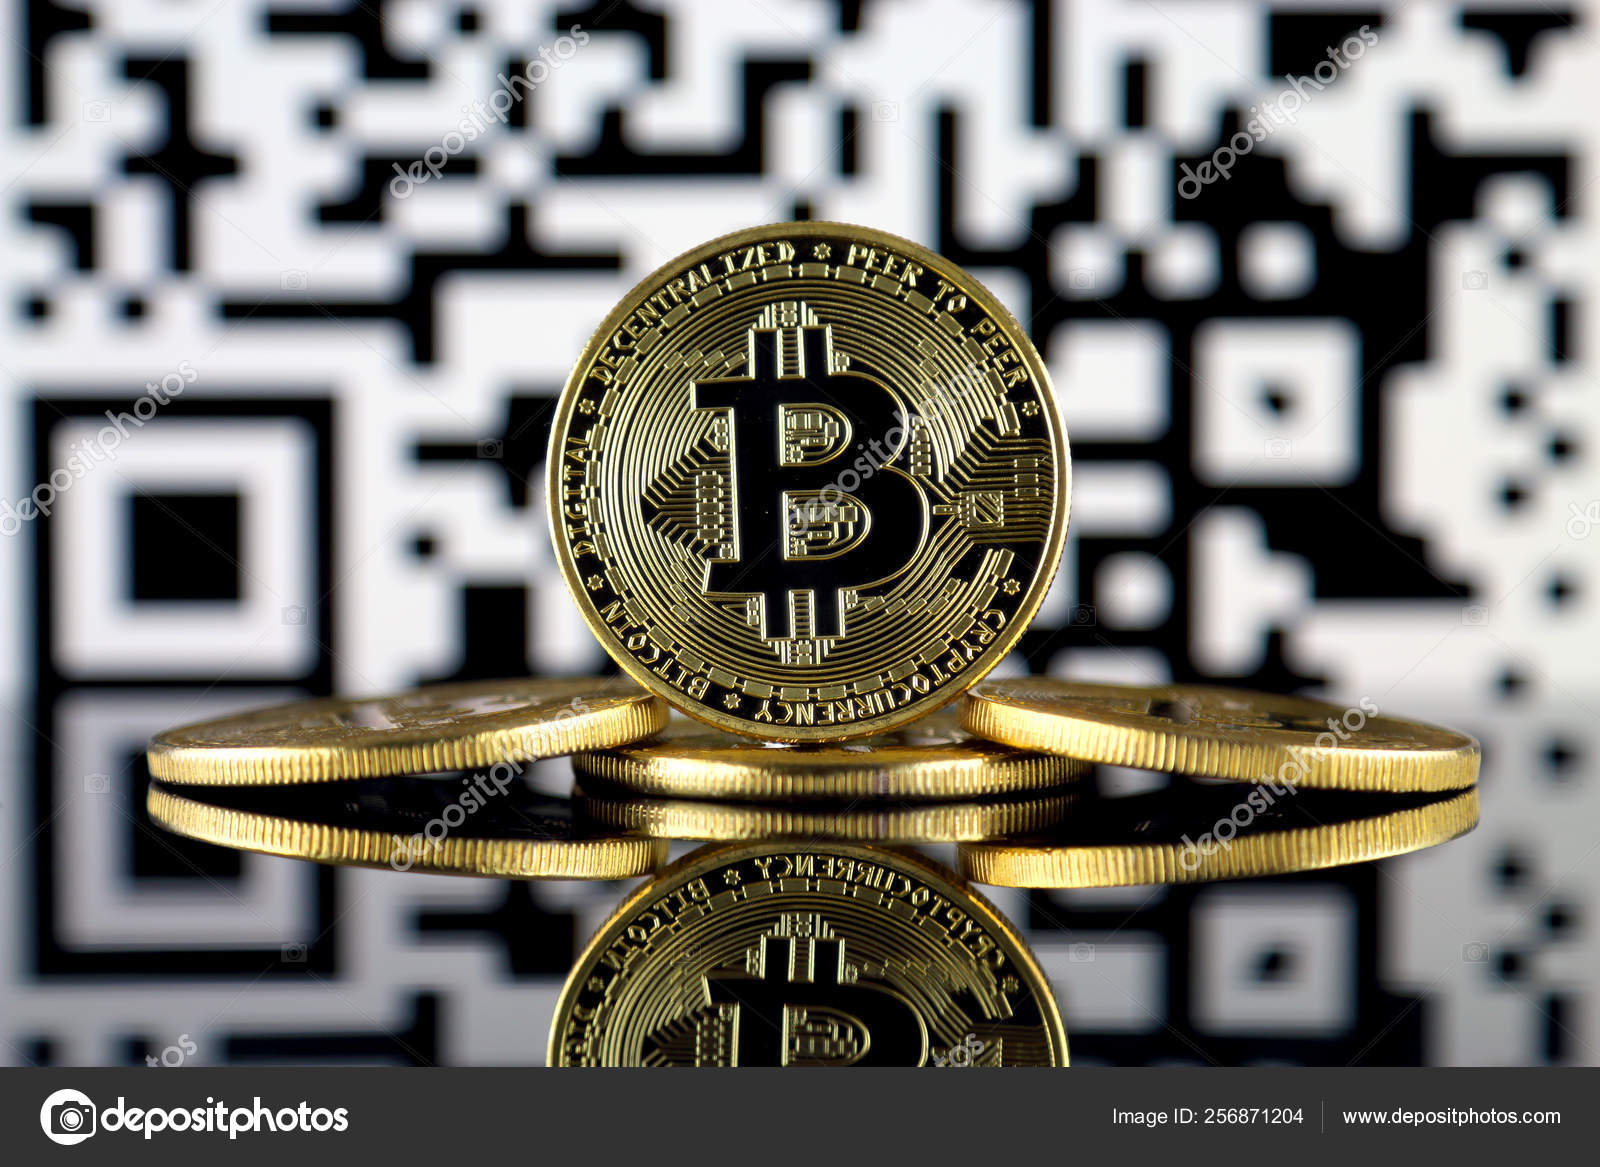 proxy privat bitcoin 1 ngn către btc